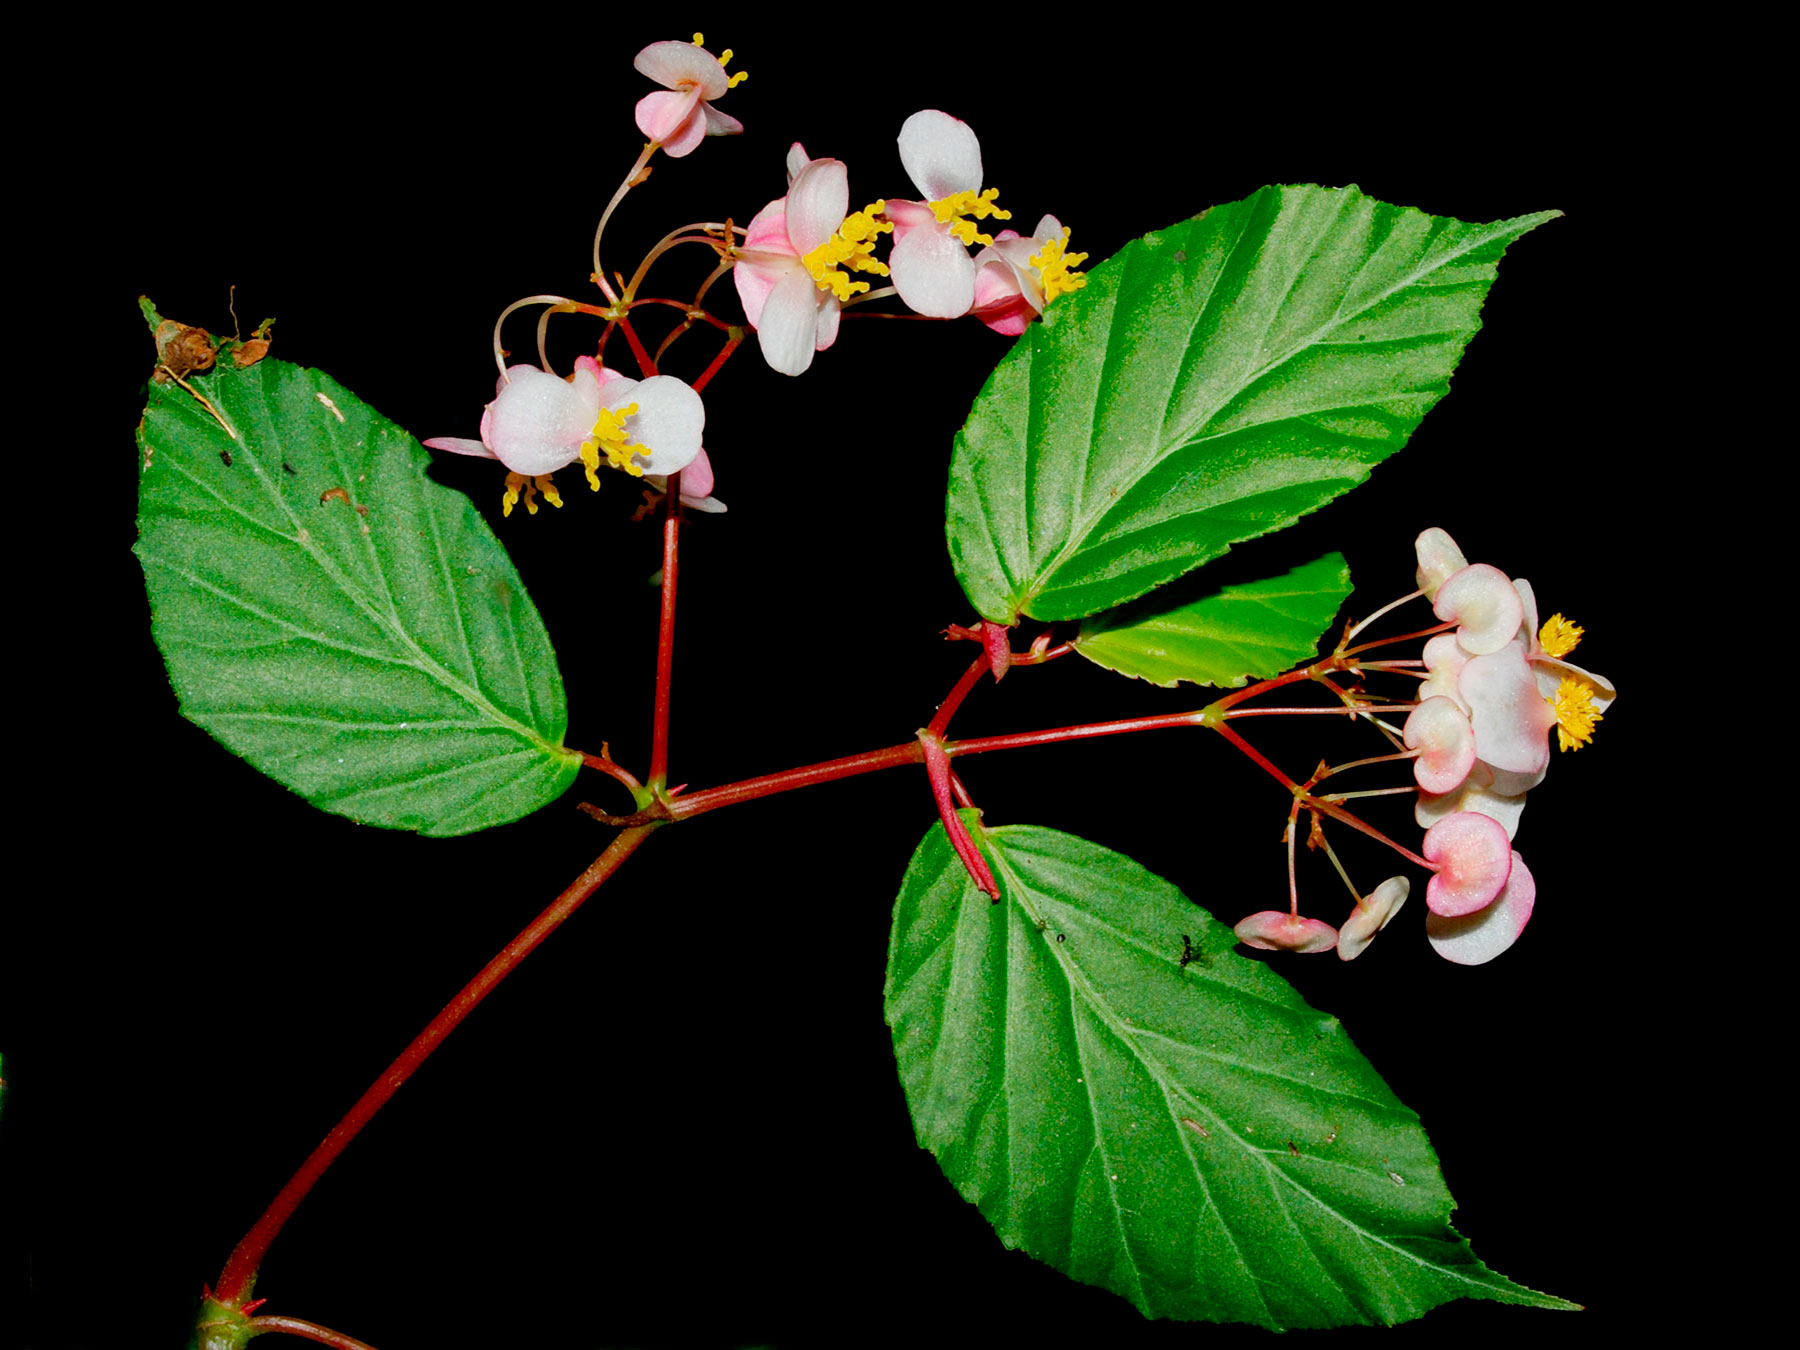 Begonia carpinifolia, especie endémica de Costa Rica y Oeste de Panamá